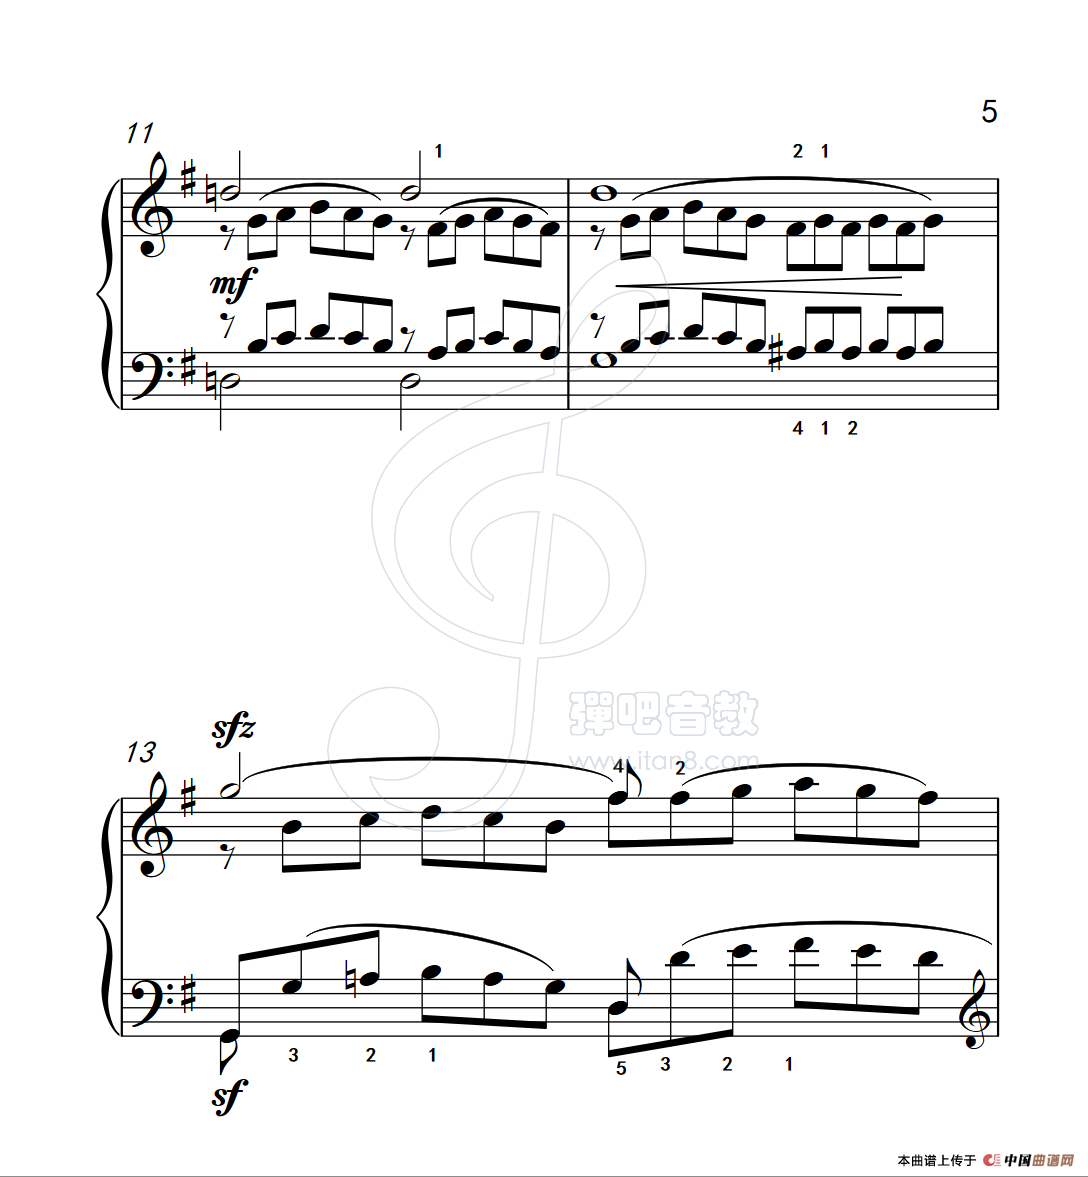 《练习曲 2》钢琴曲谱图分享